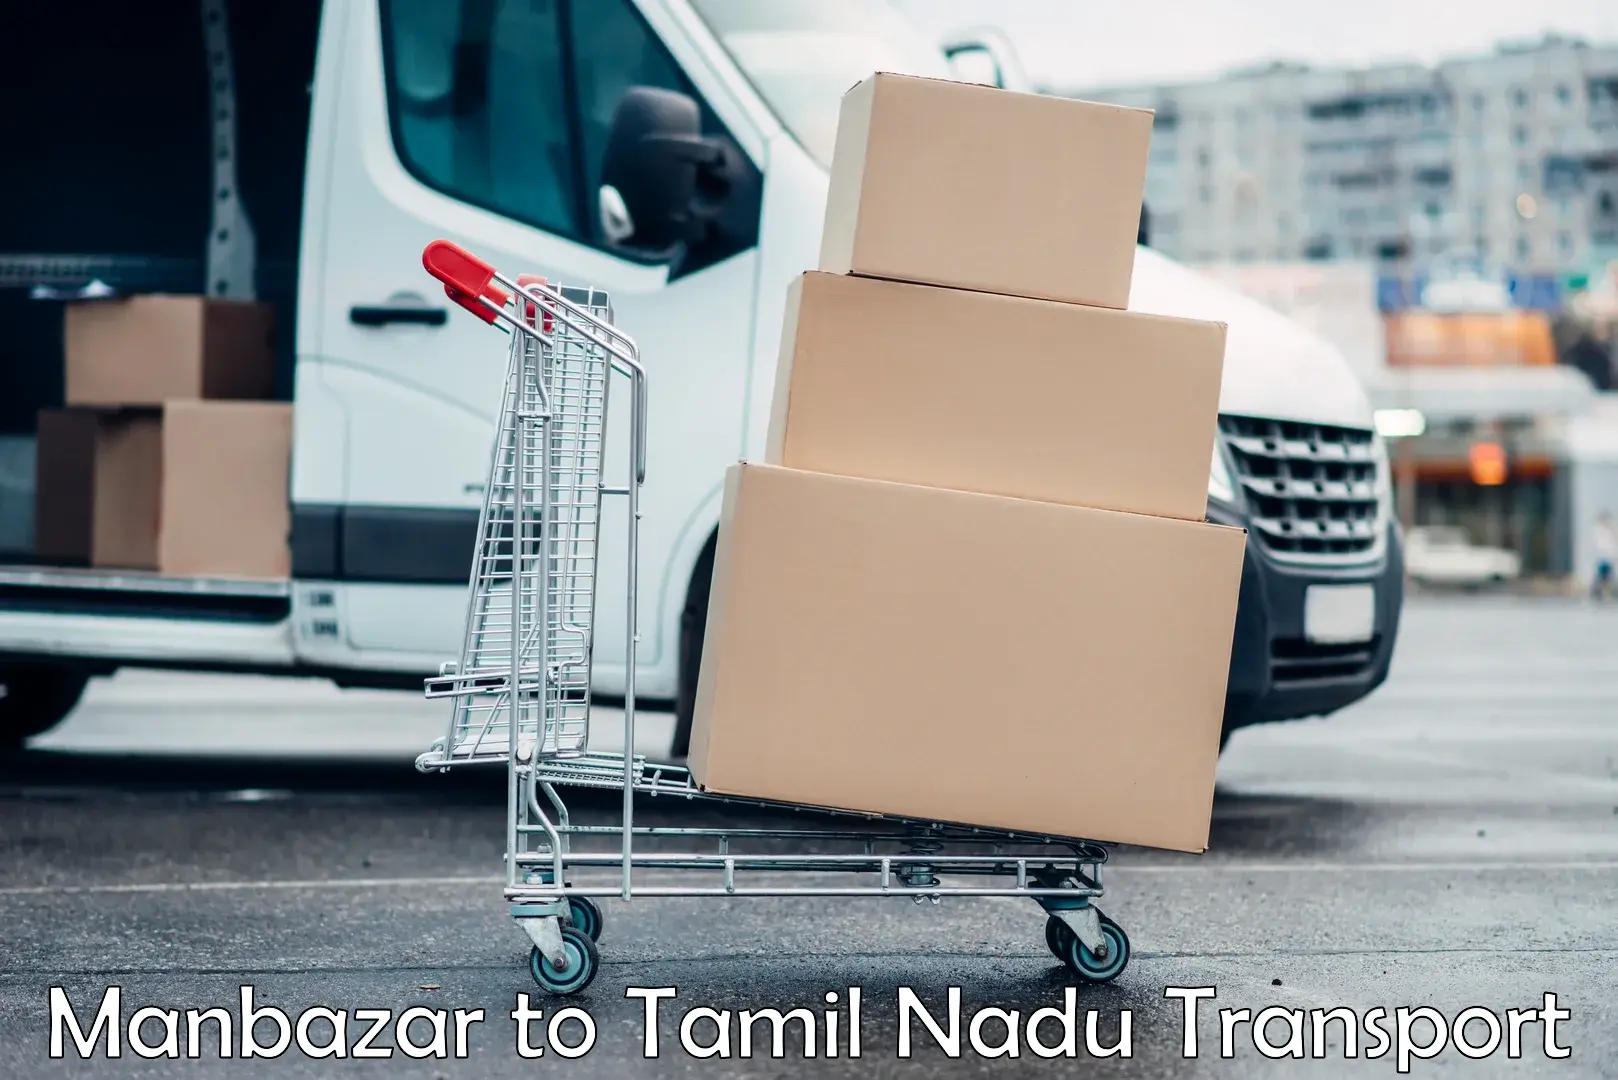 Air cargo transport services Manbazar to Tamil Nadu